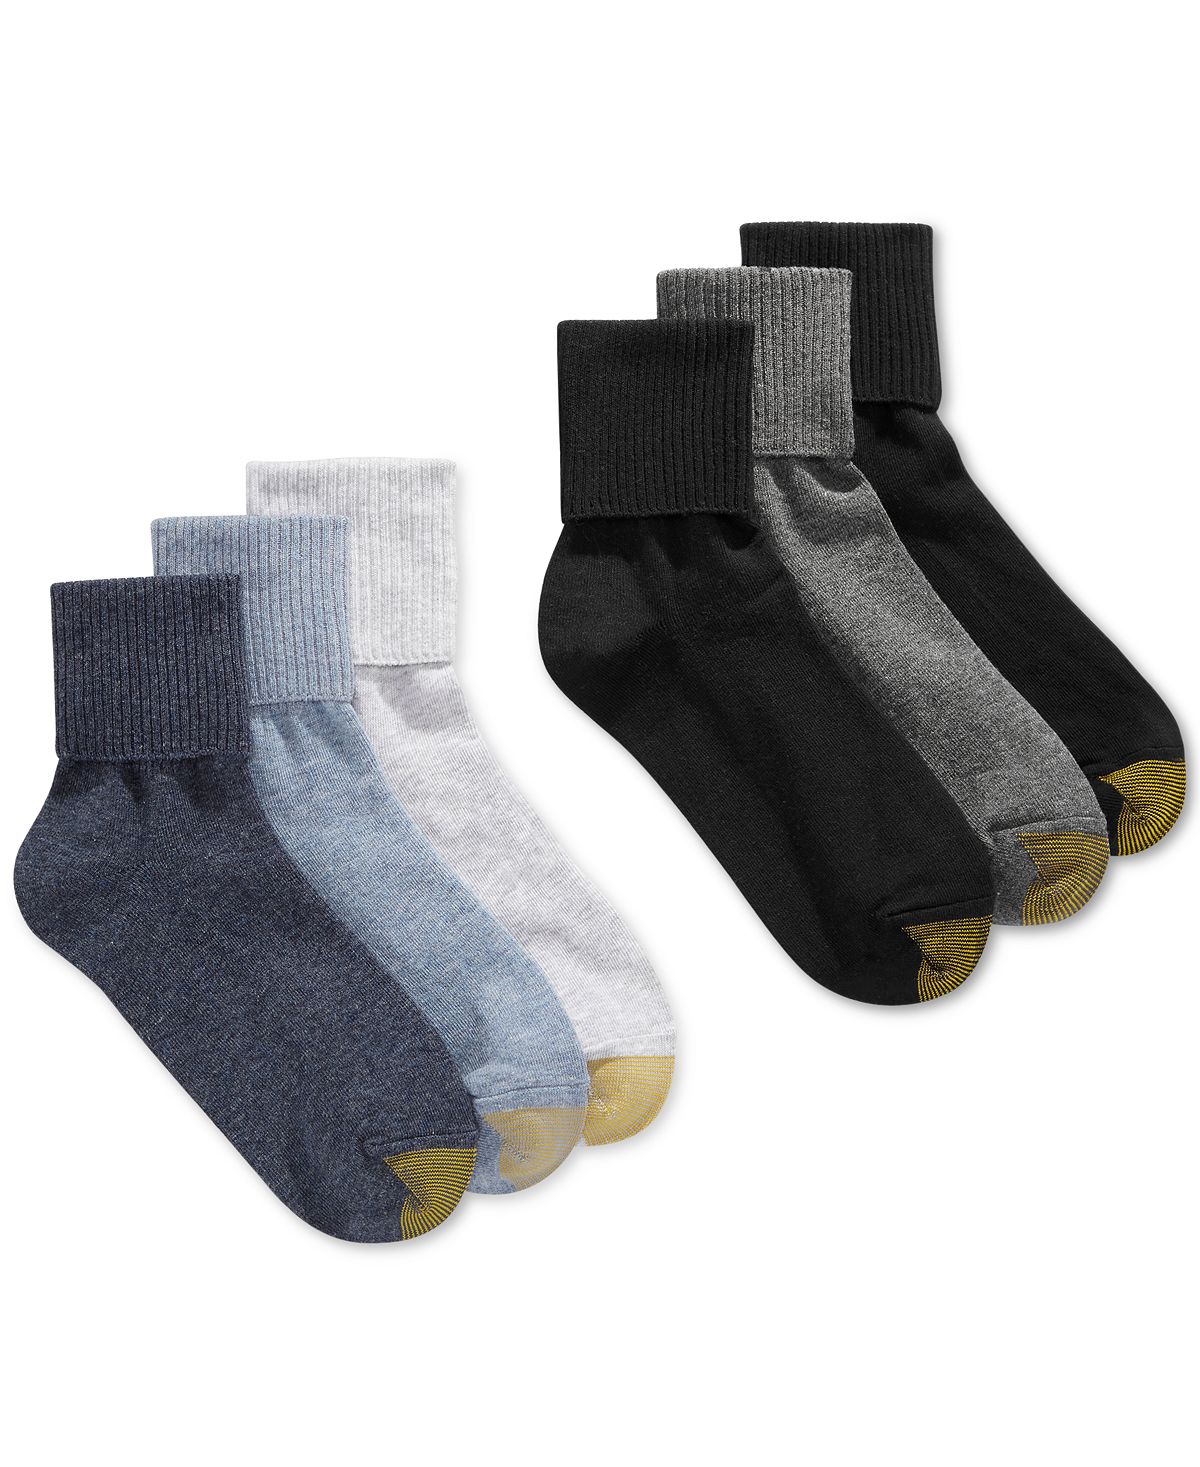 Женские повседневные носки с поворотными манжетами (6 пар), также доступны в расширенных размерах Gold Toe